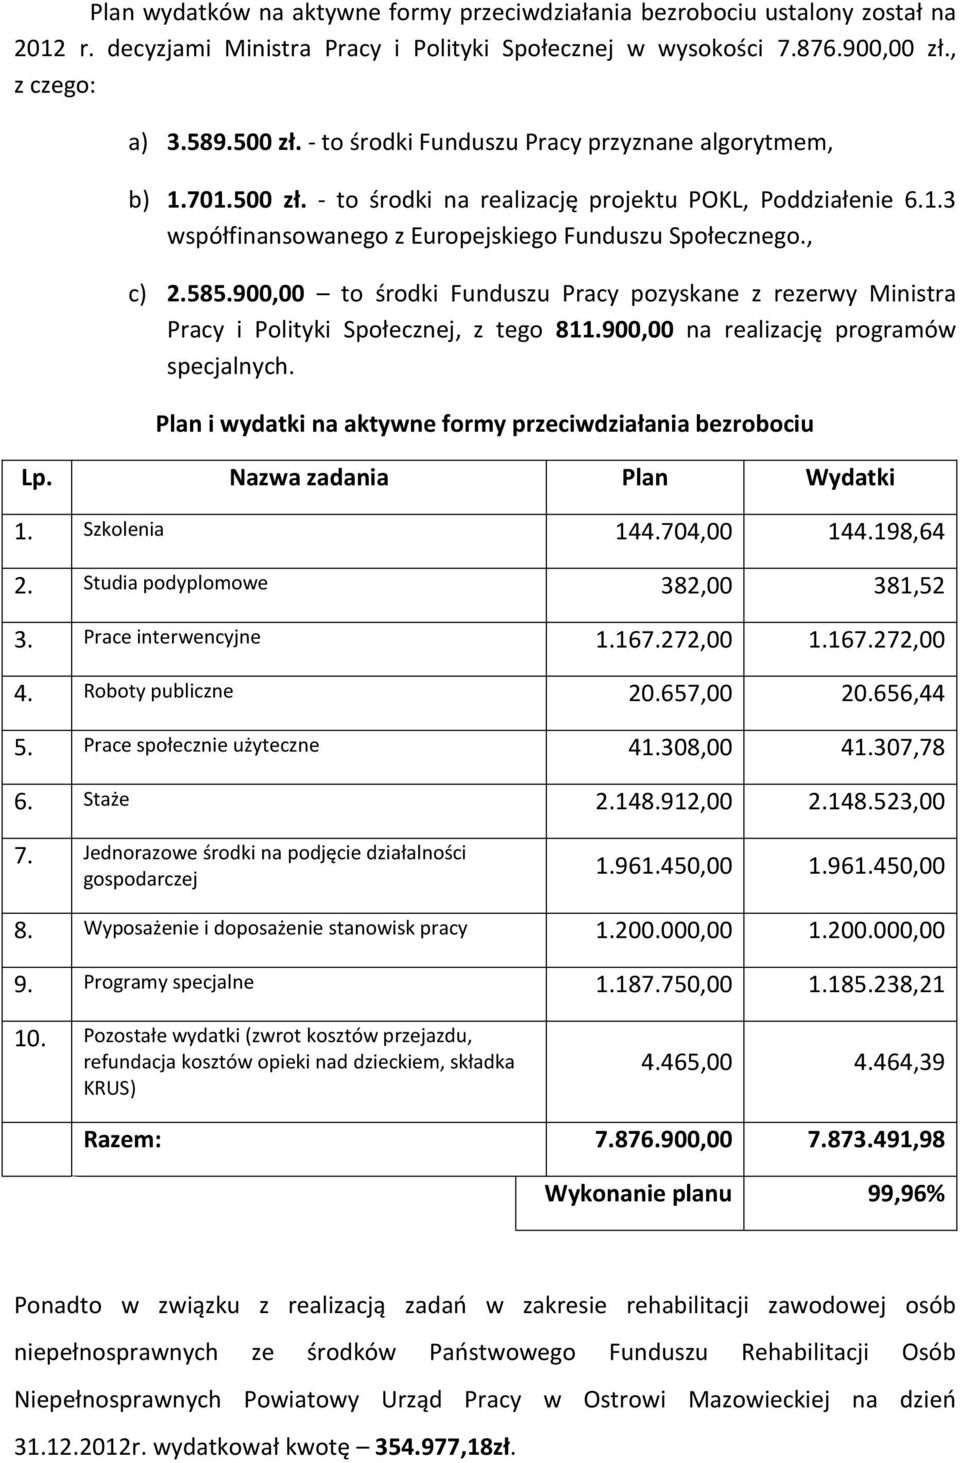 900,00 to środki Funduszu Pracy pozyskane z rezerwy Ministra Pracy i Polityki Społecznej, z tego 811.900,00 na realizację programów specjalnych.